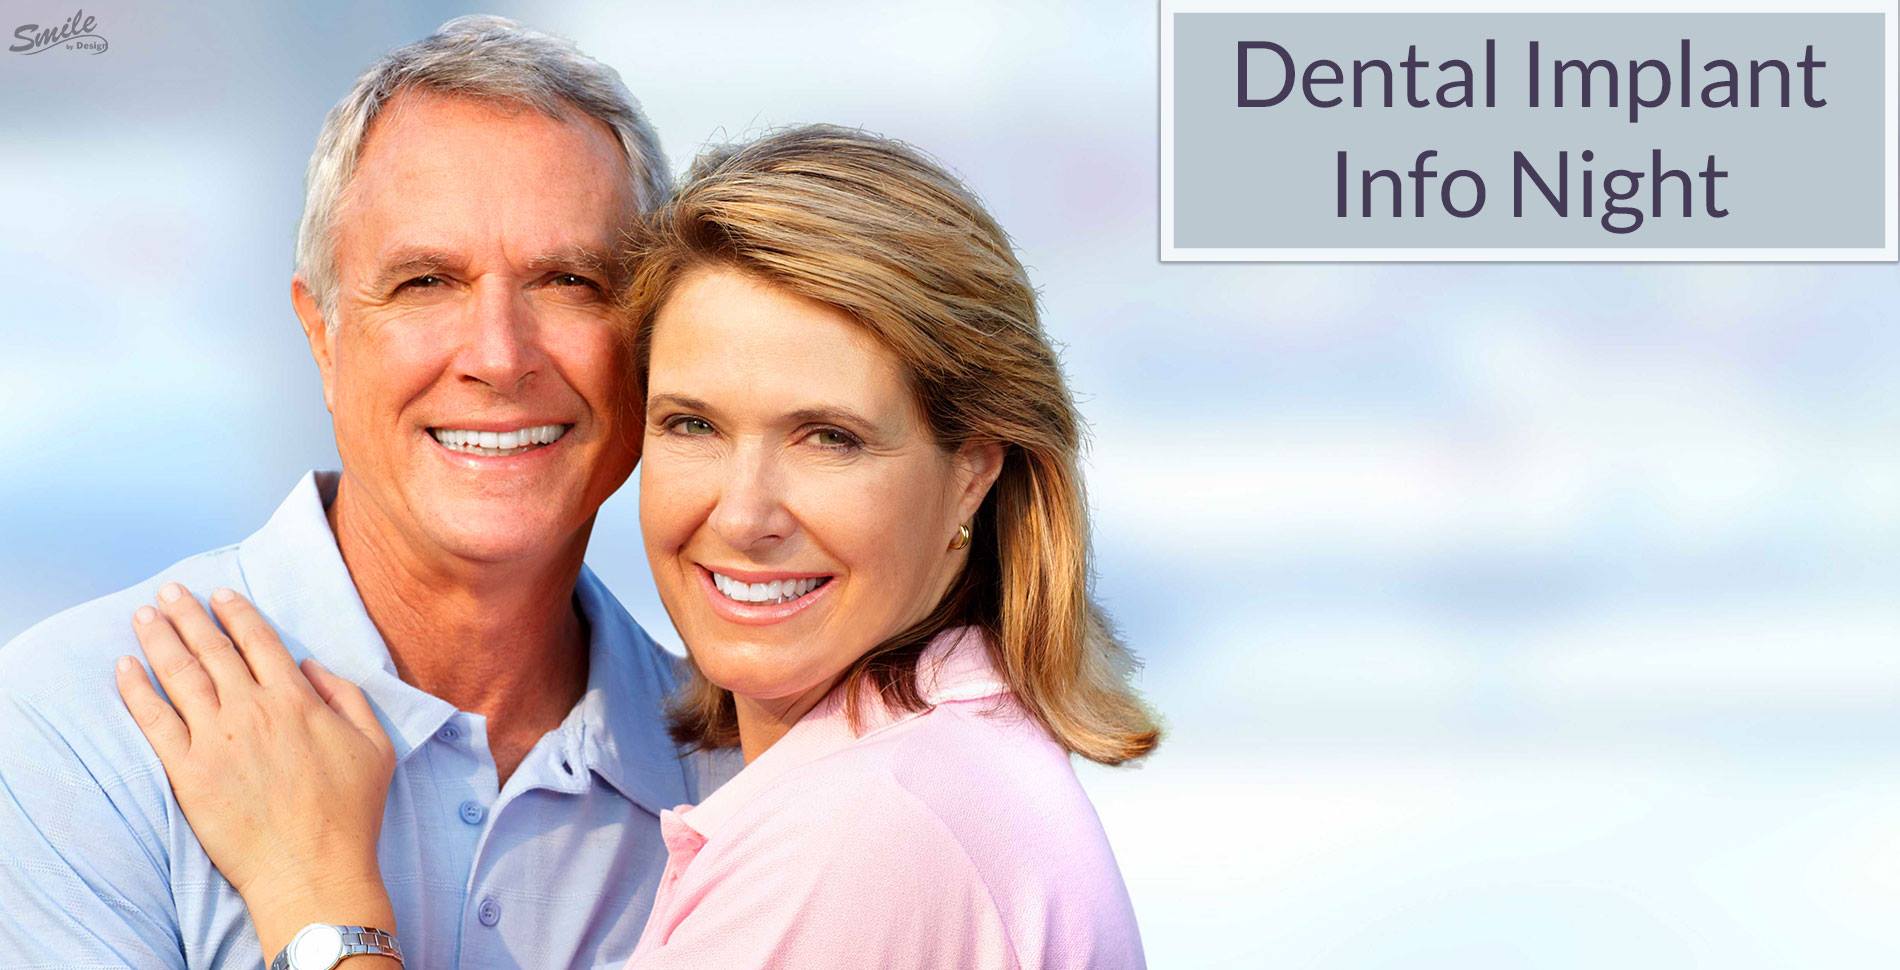 Dental Implant Information Event